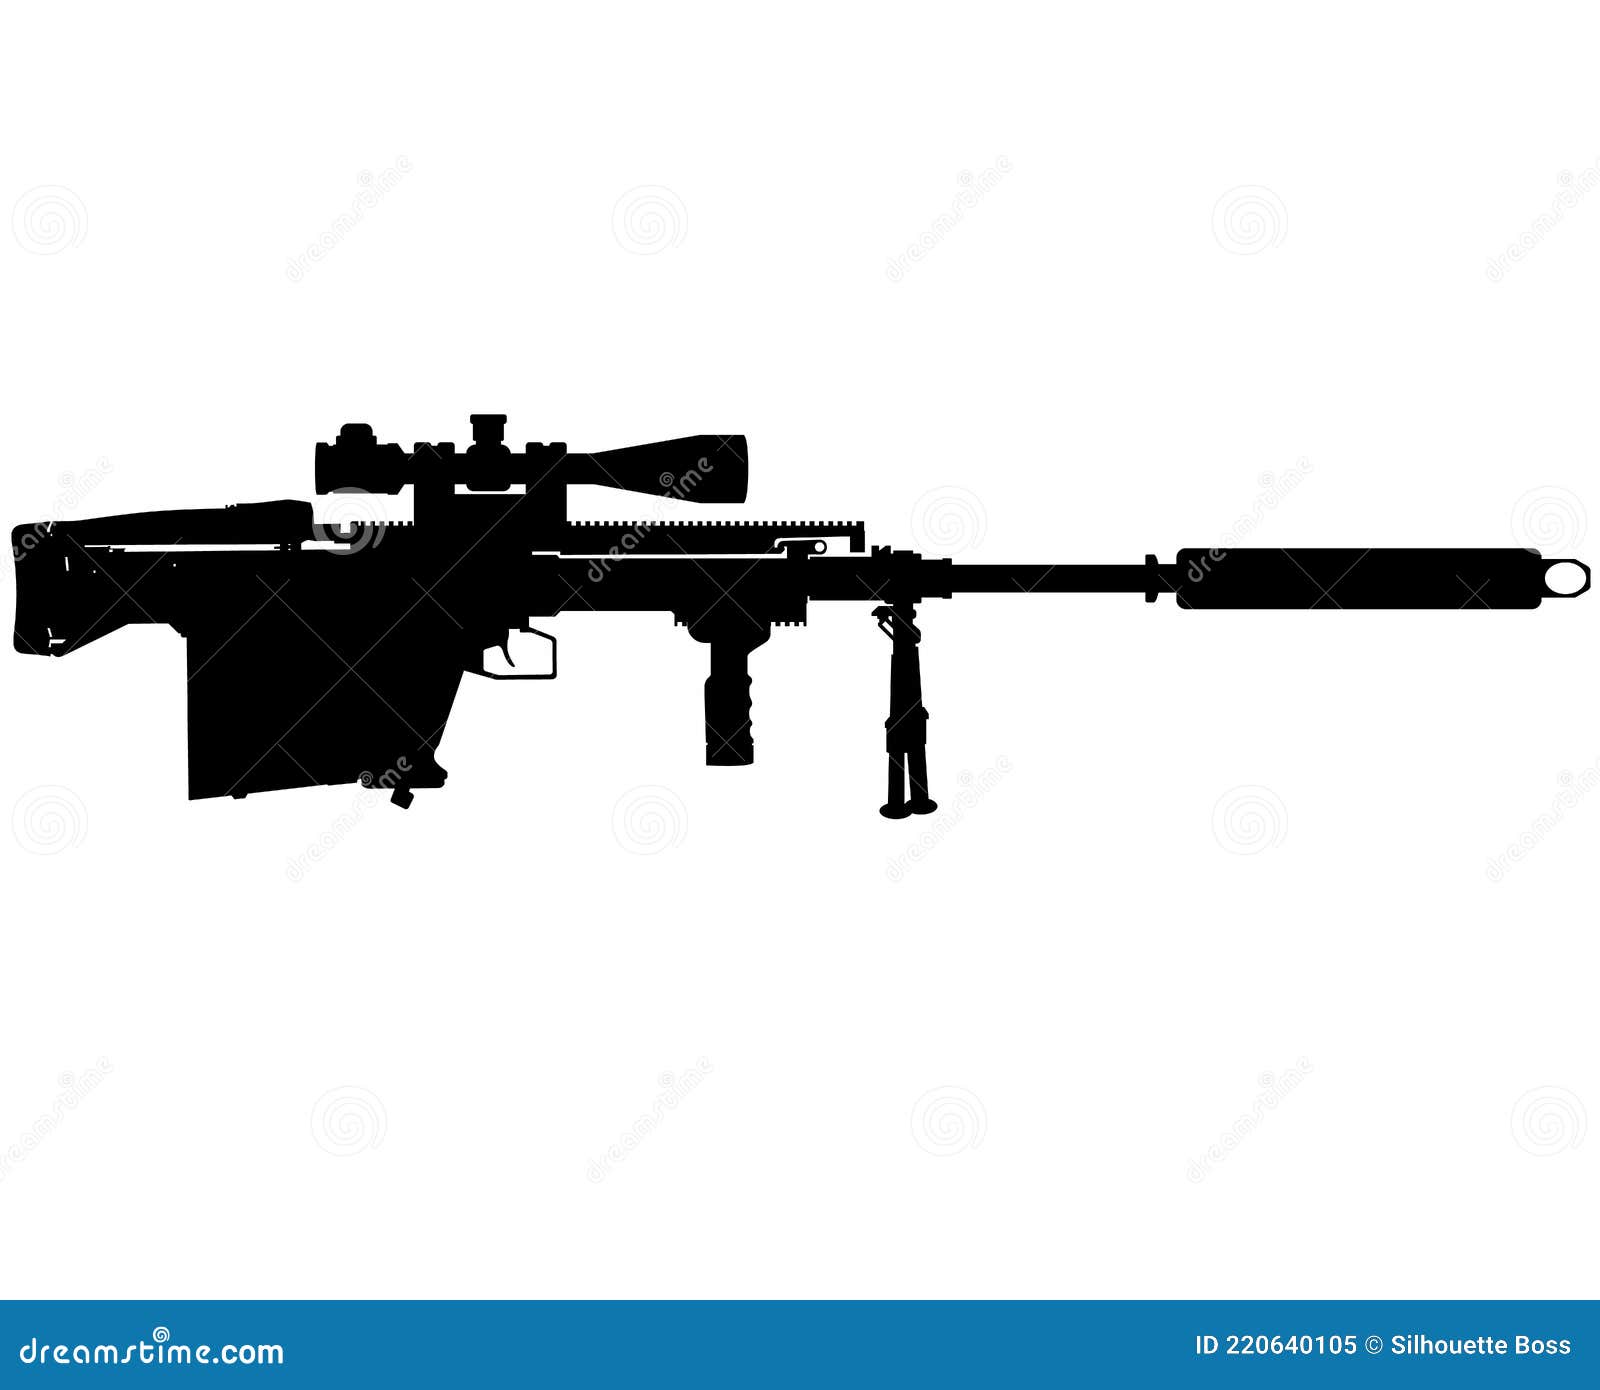 gepard gepÃÂ¡rd anti materiel rifle, gm6 lynx caliber 50 bmg cal 12 Ãâ 99 nato bulpup semi auto army special forces sniper rifle